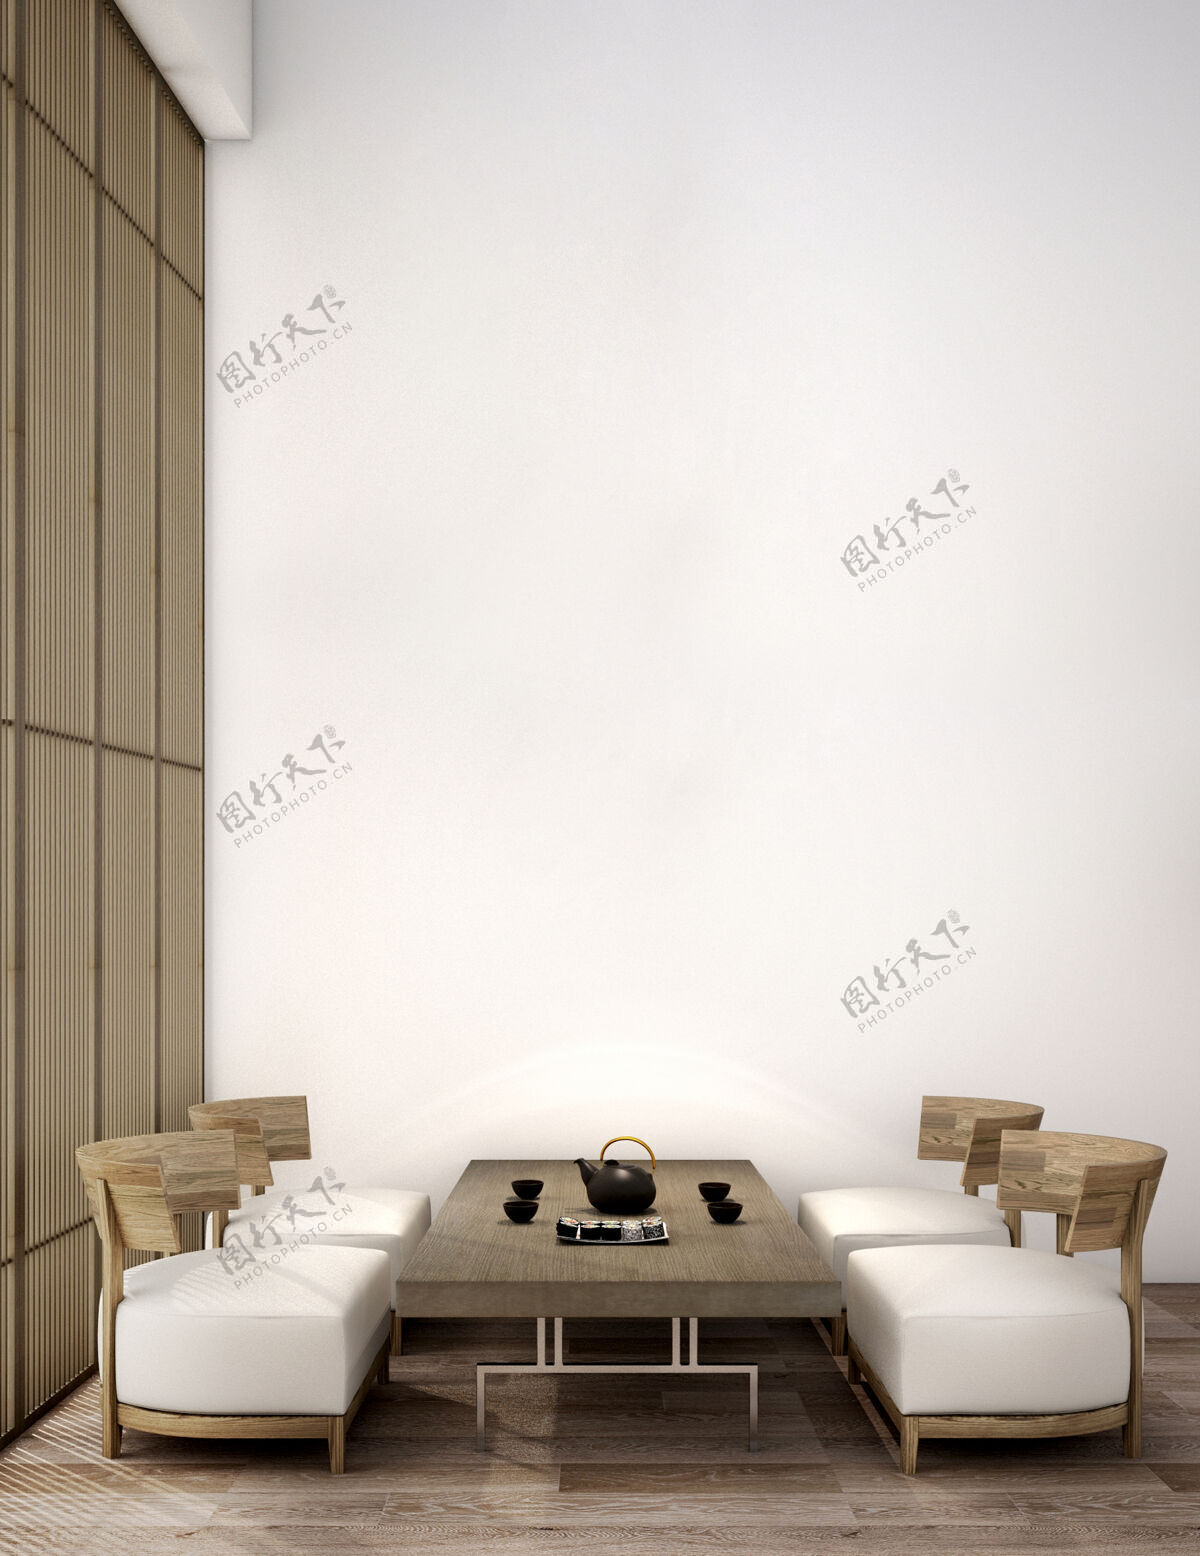 房间日式生活区室内设计椅子墙壁简约